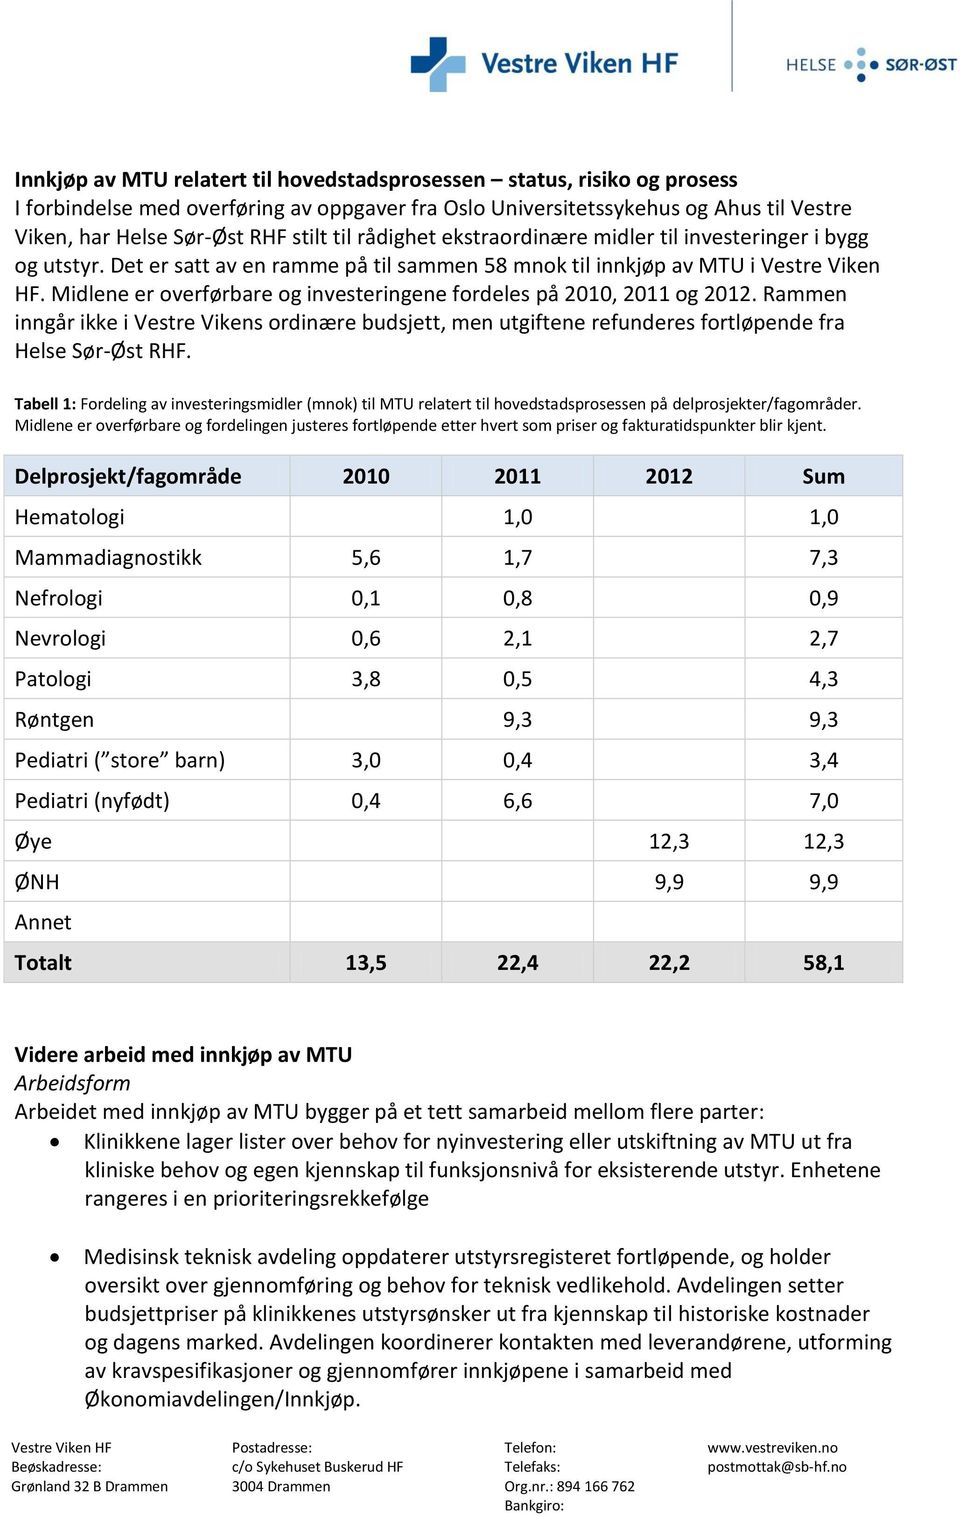 Midlene er overførbare og investeringene fordeles på 2010, 2011 og 2012. Rammen inngår ikke i Vestre Vikens ordinære budsjett, men utgiftene refunderes fortløpende fra Helse Sør-Øst RHF.